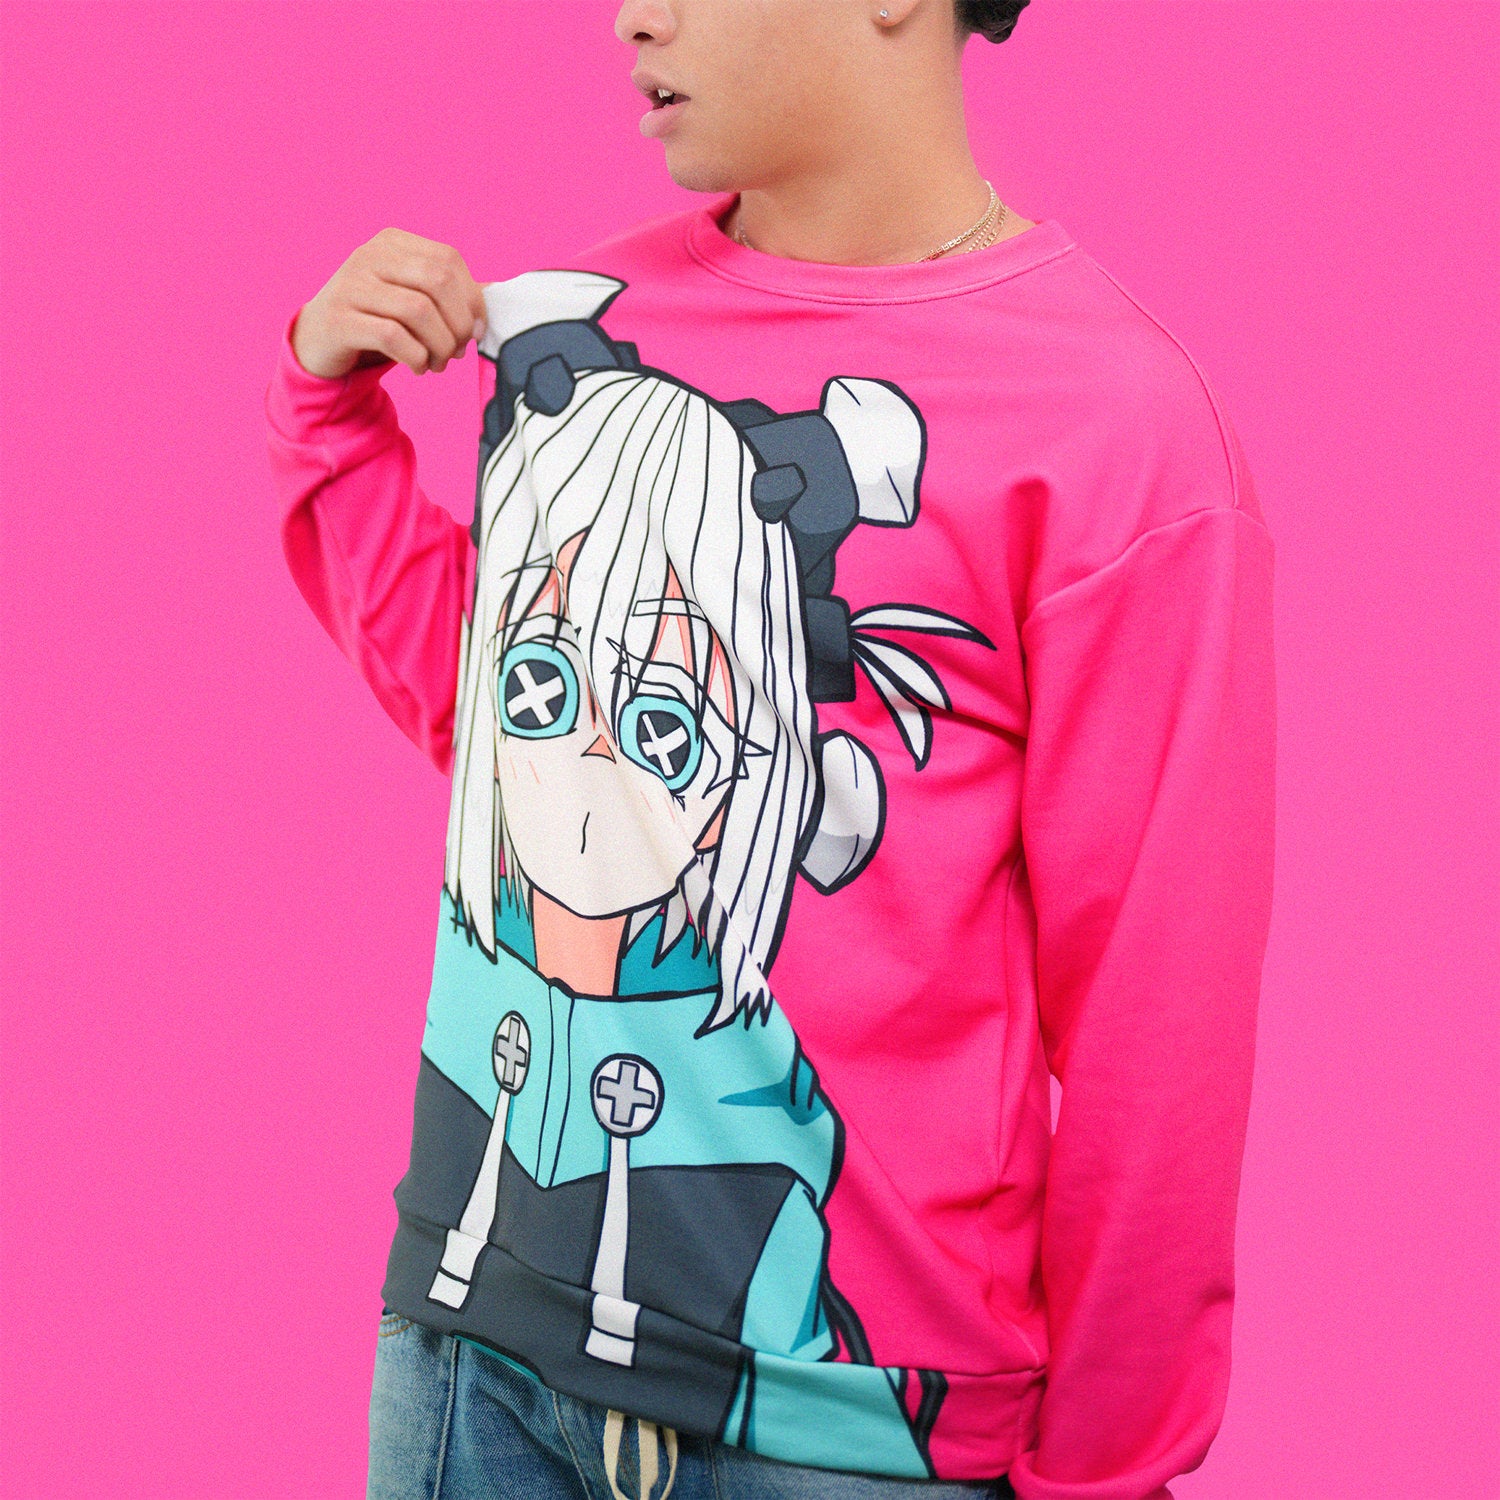 cyberpunk sweater pink anime manga otaku